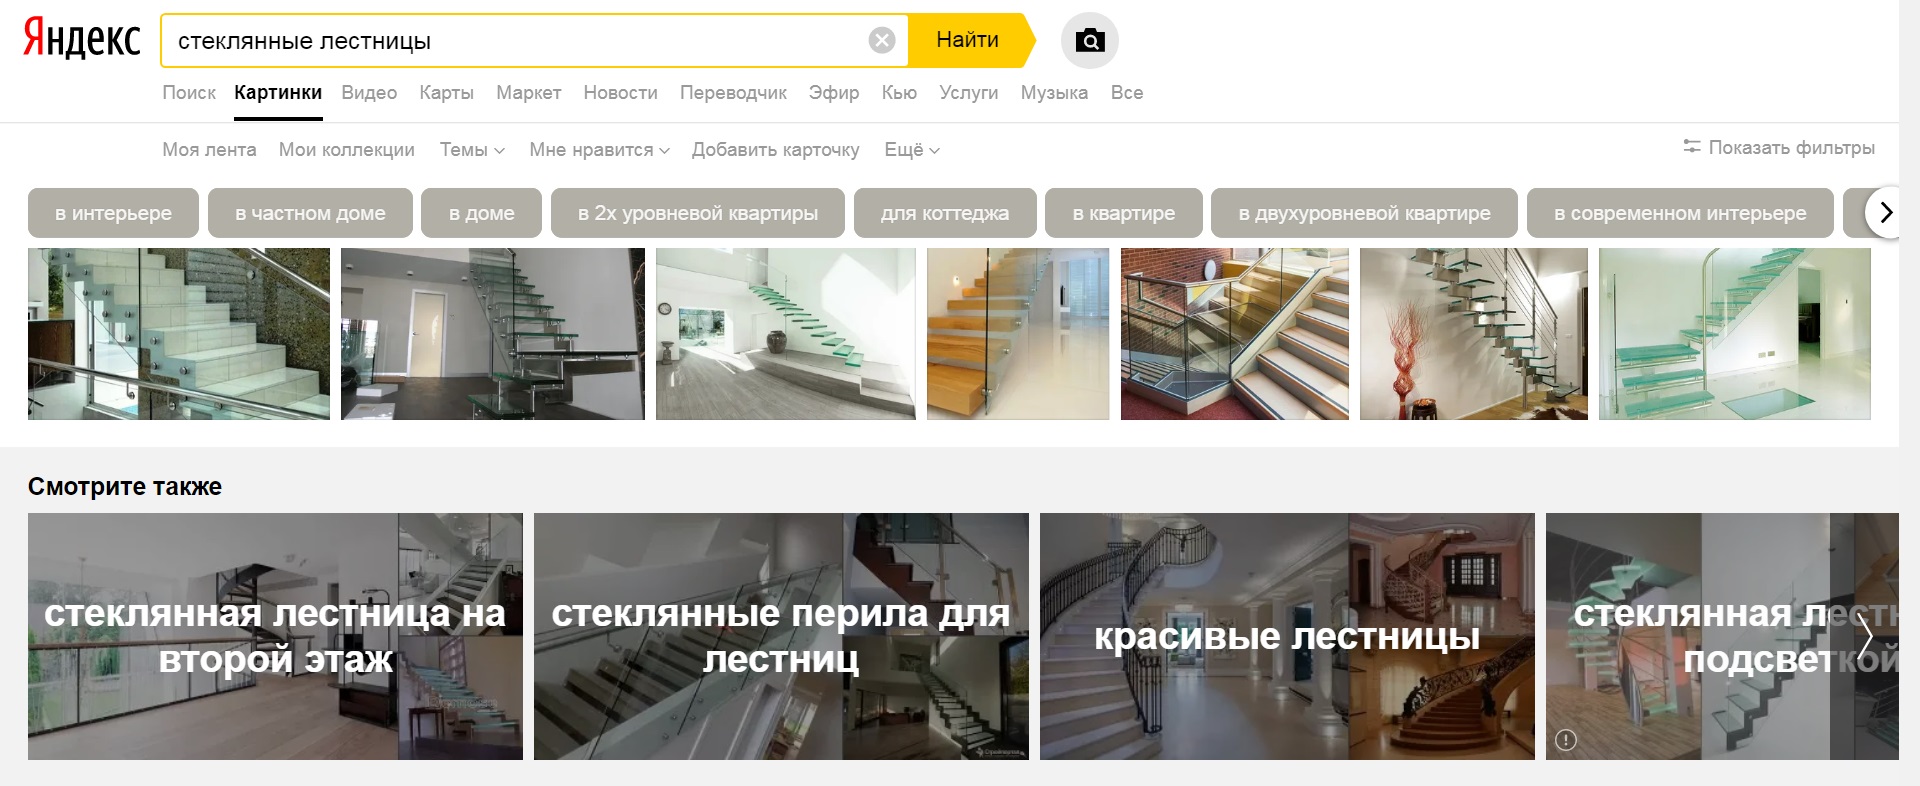 seo-продвижение архитектурной компании, ключевые запросы Яндекс.jpg